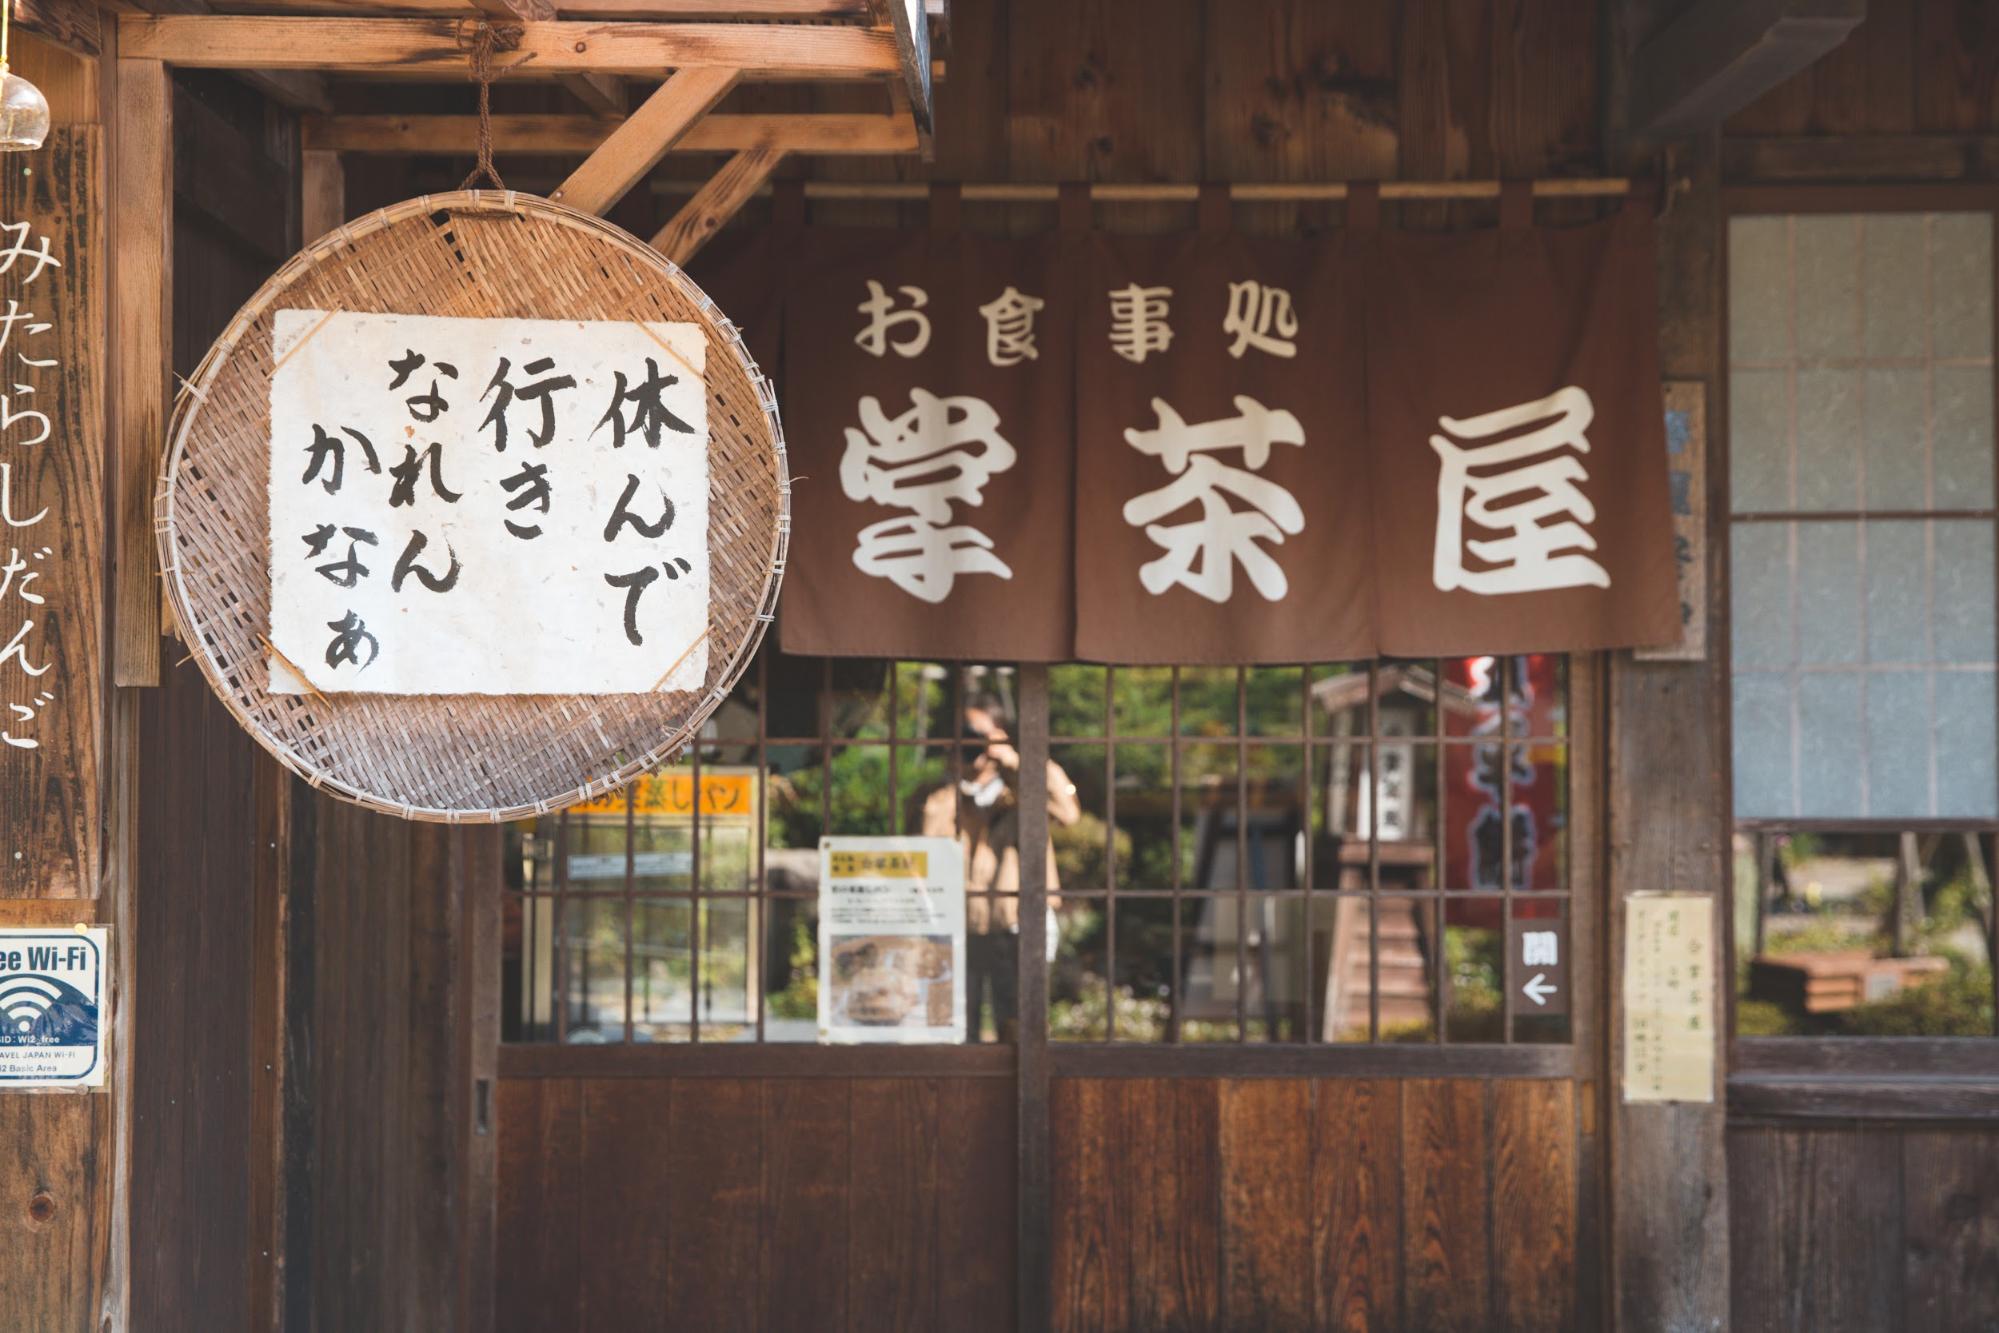 日本の原風景が体験できる 合掌造りの里 下呂温泉合掌村